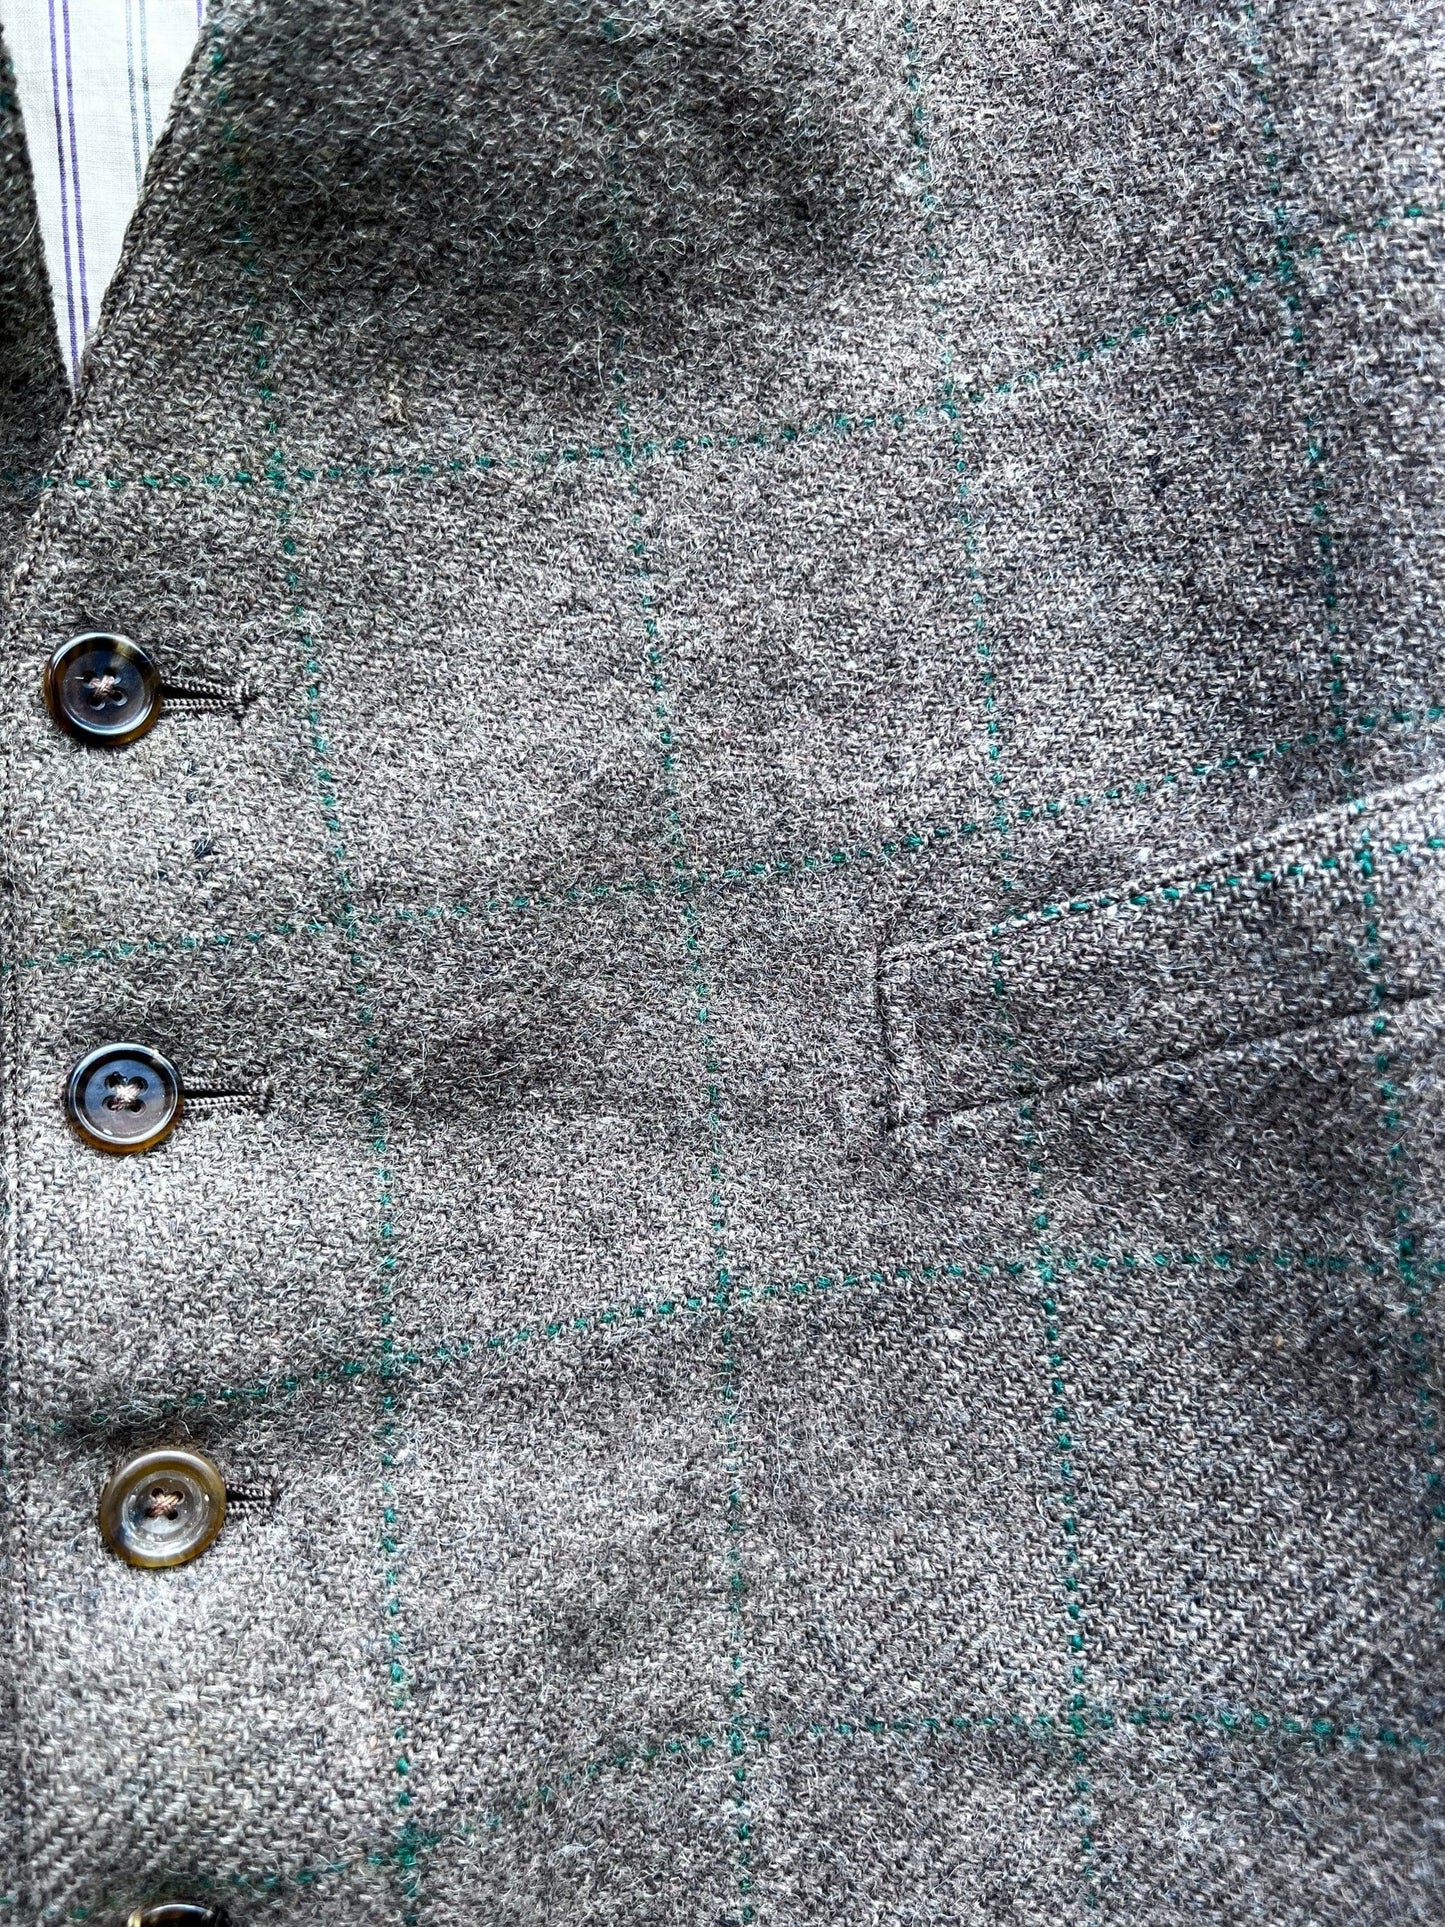 Mens 1950s Vintage Waistcoat Vest Tweed Check Brown Green 6 Button 4 Pocket Tweed waistcoat Men’s Vintage Vest, Vintage Tweed - some flaws